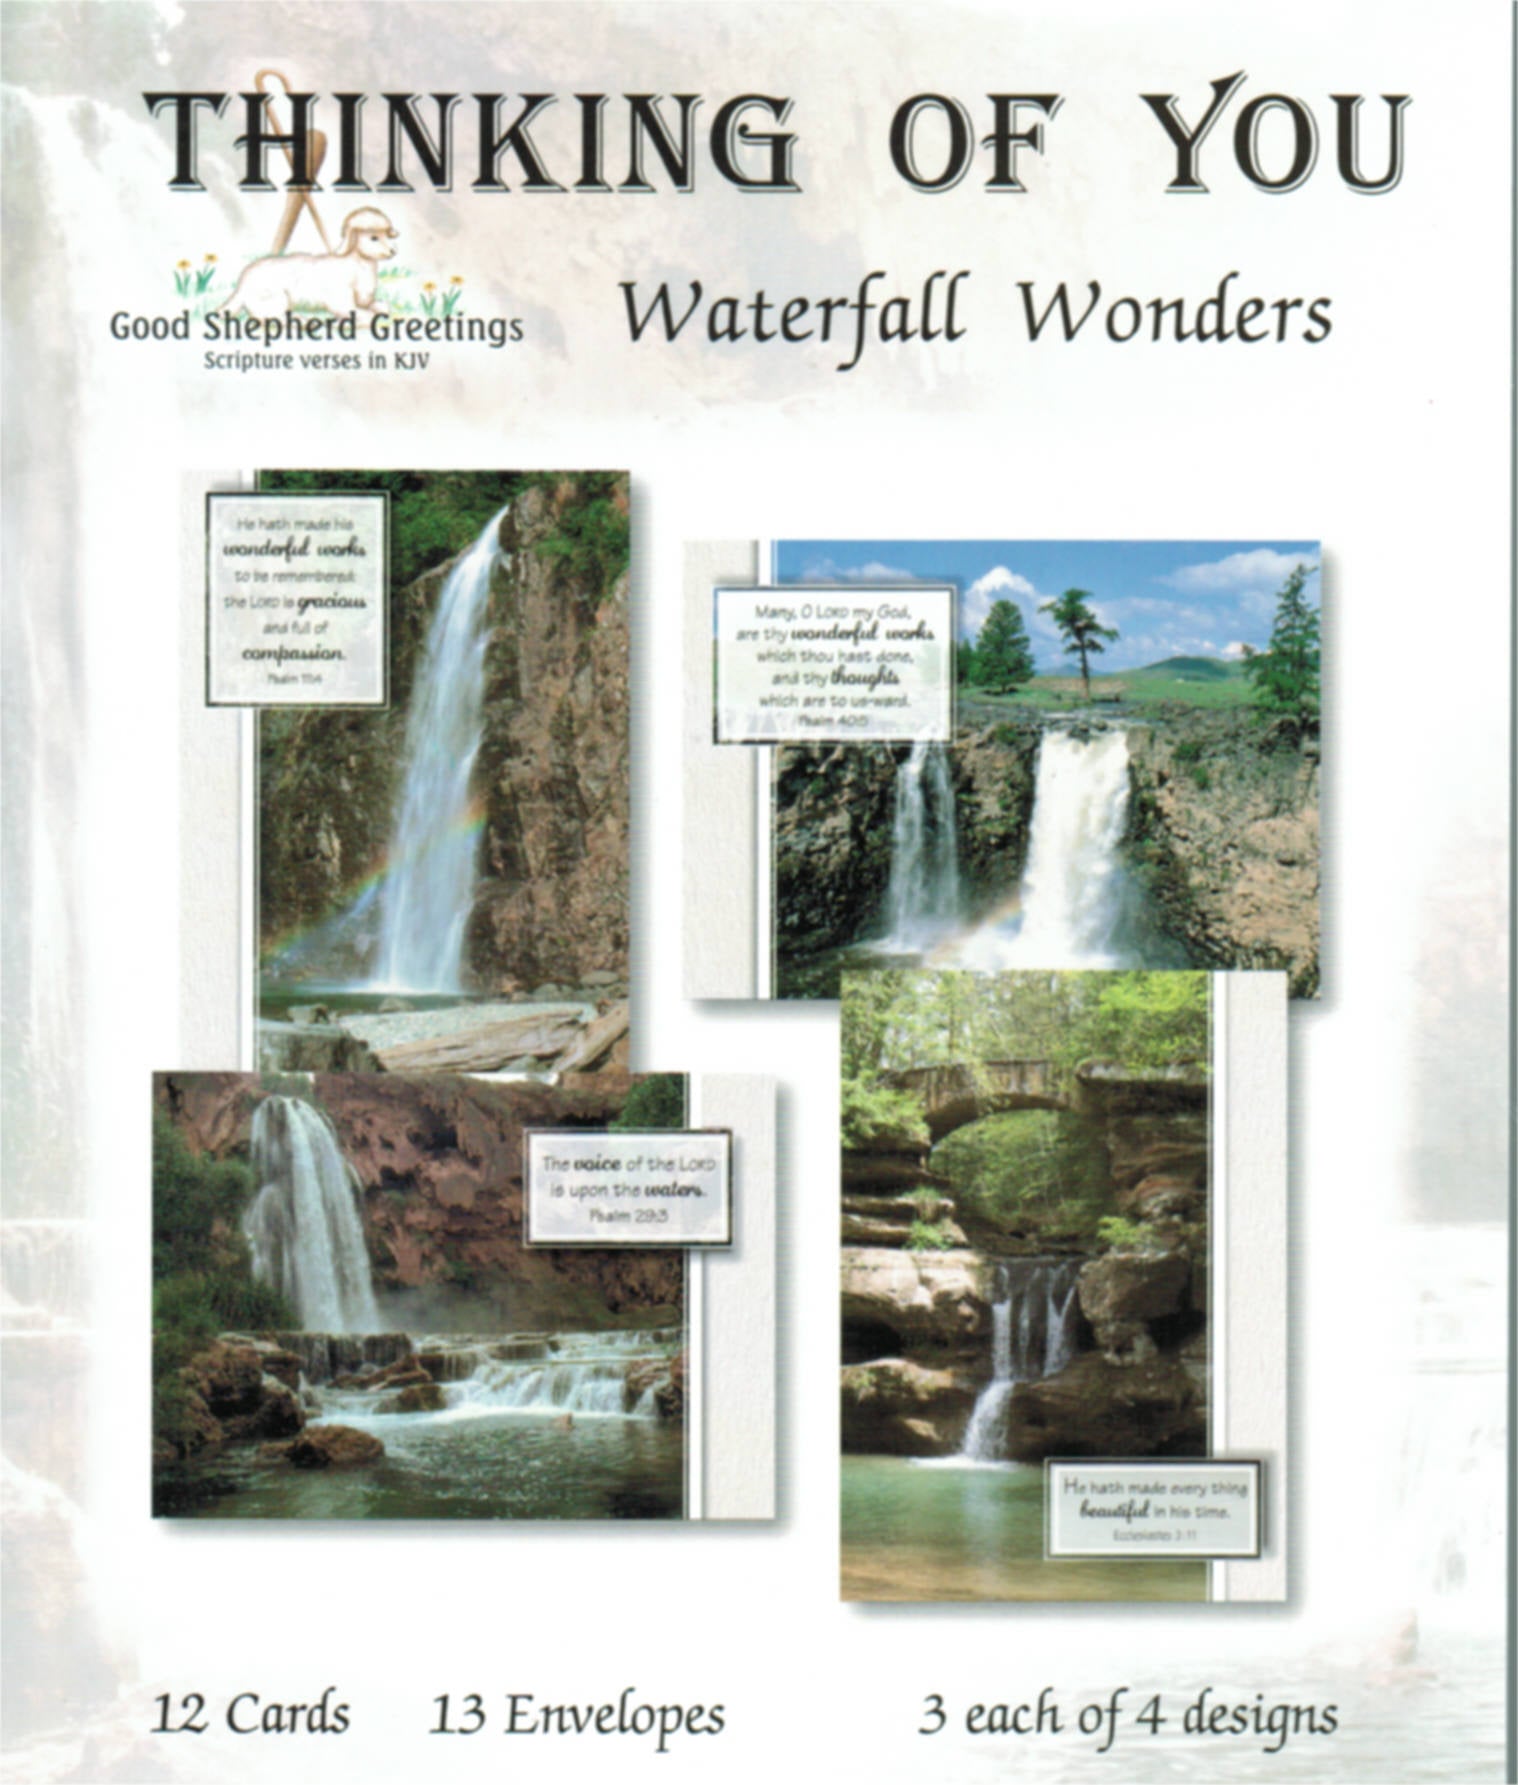 Good Shepherd Greetings - Thinking of You: Waterfall Wonders